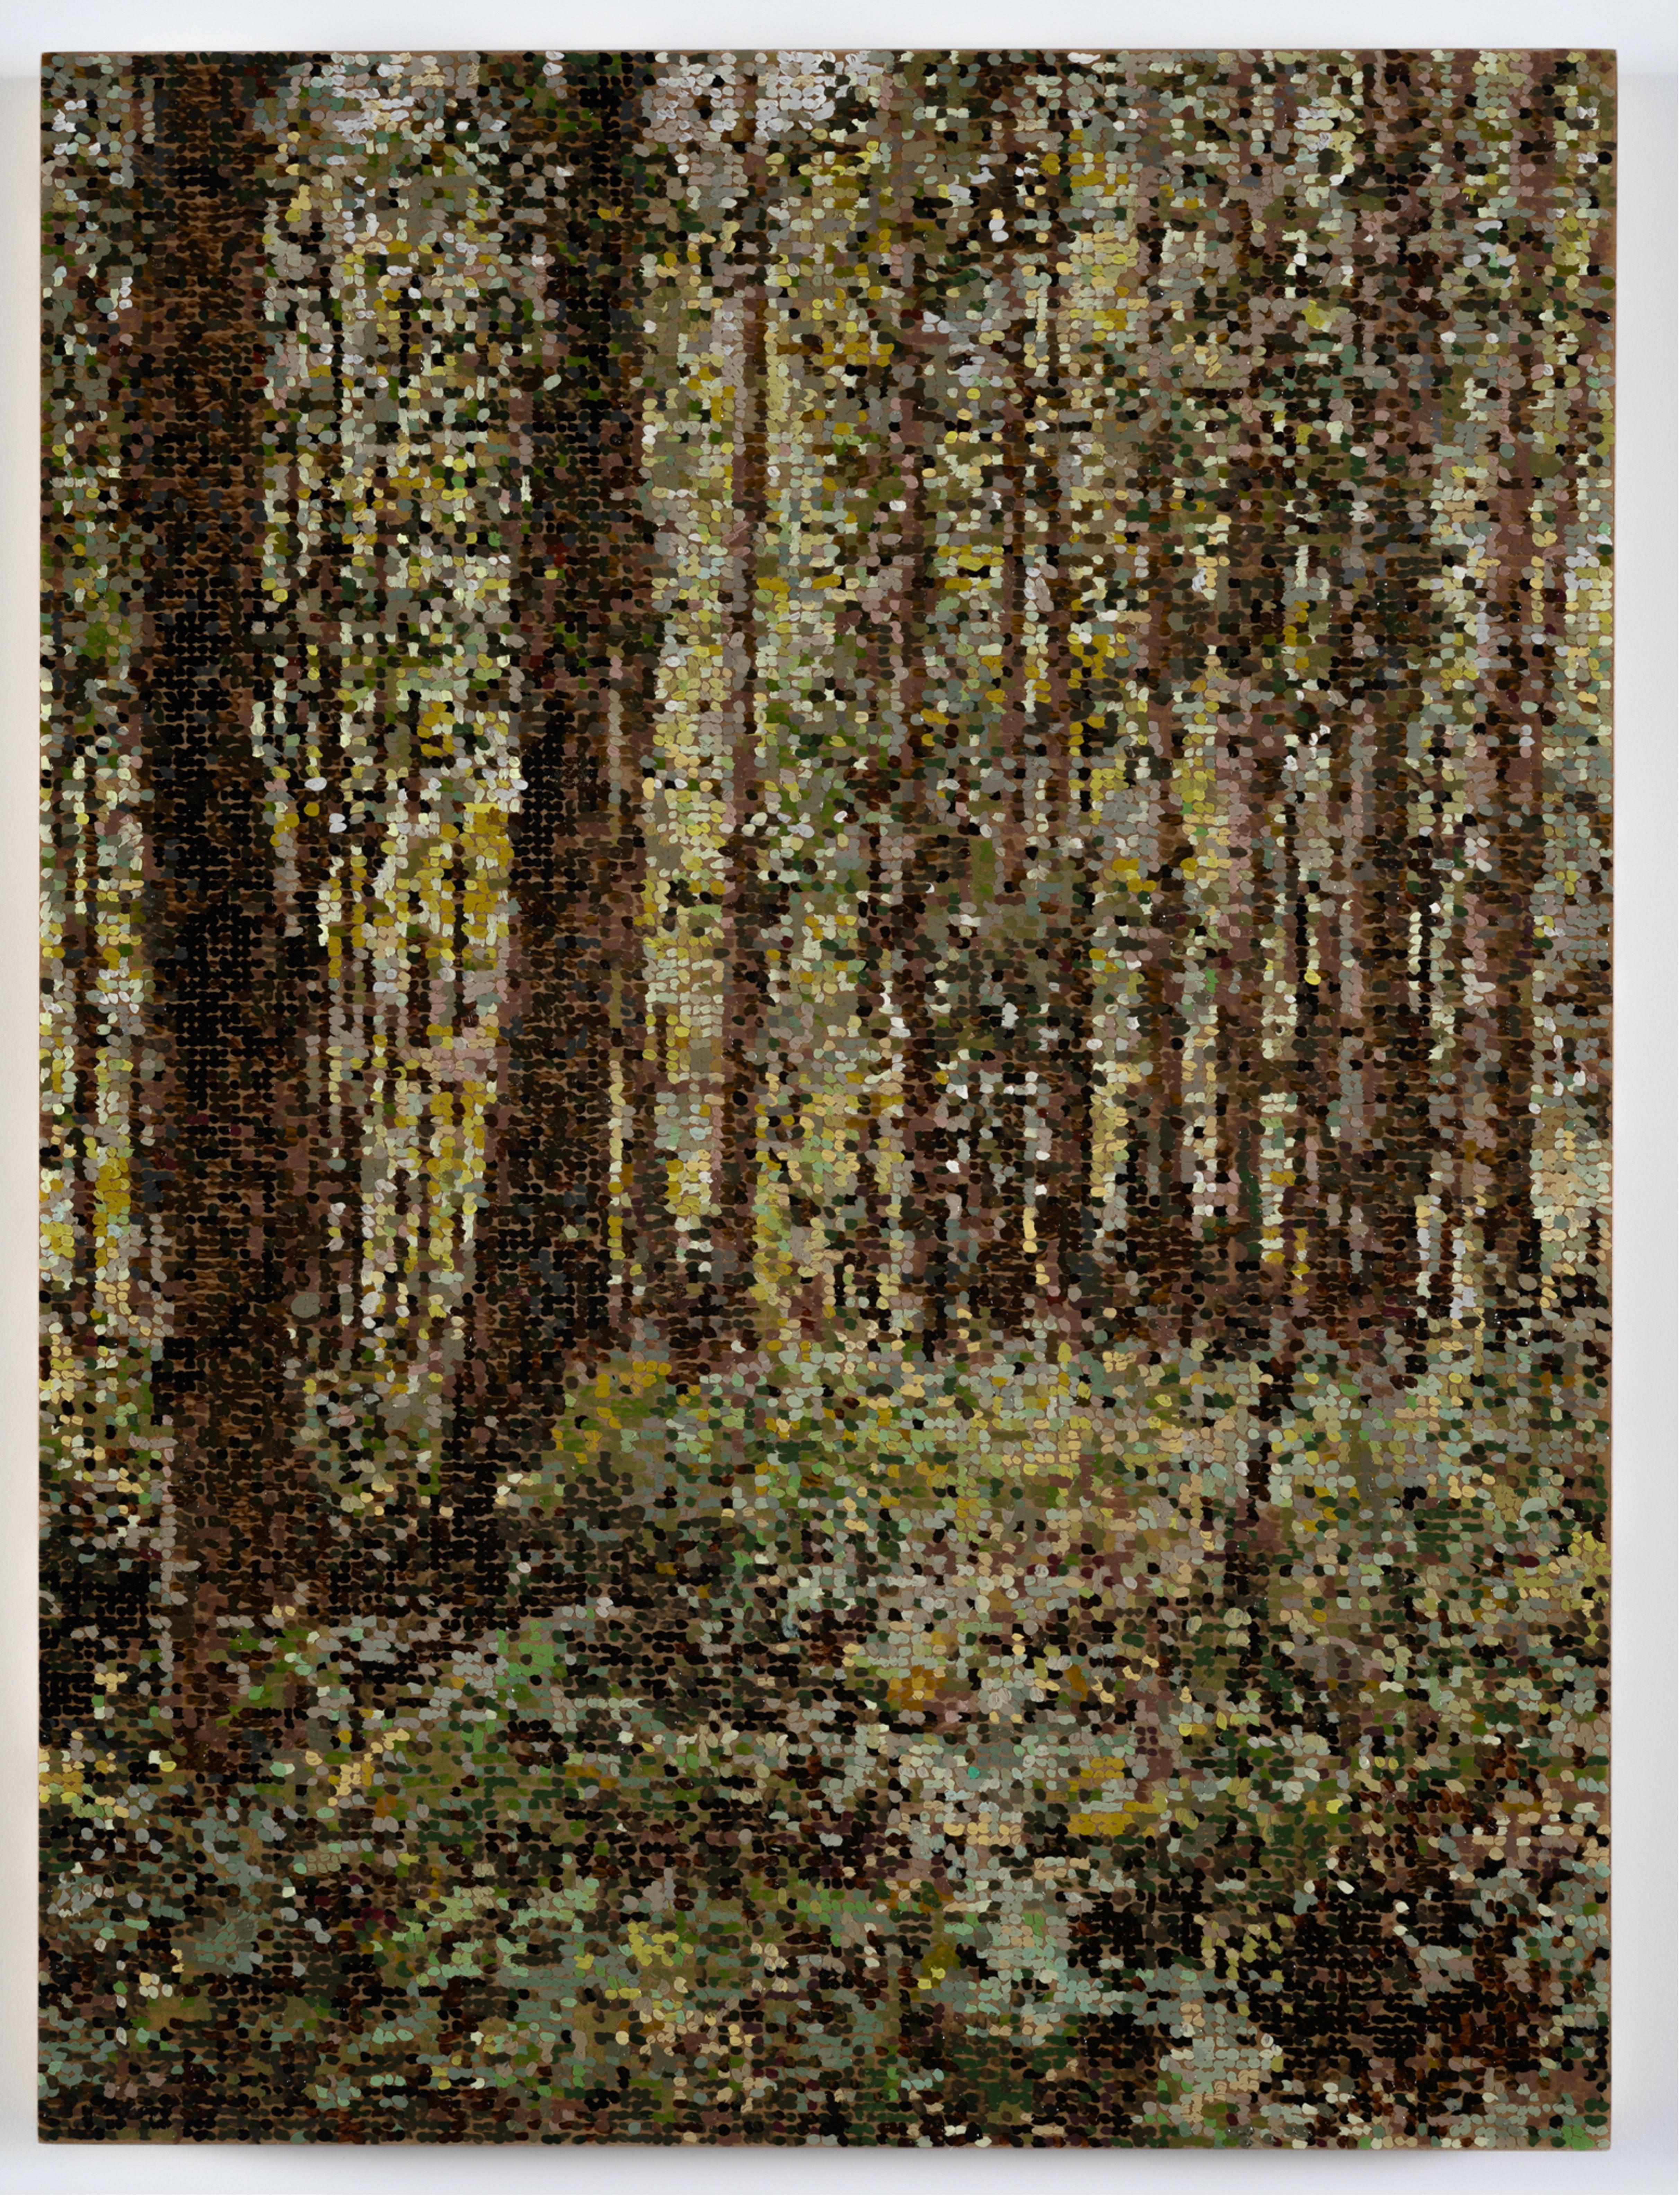 Ausgeschnittener Wald, pointillistische Waldlandschaft, grüne Blätter, braune Bäume, Hölzer